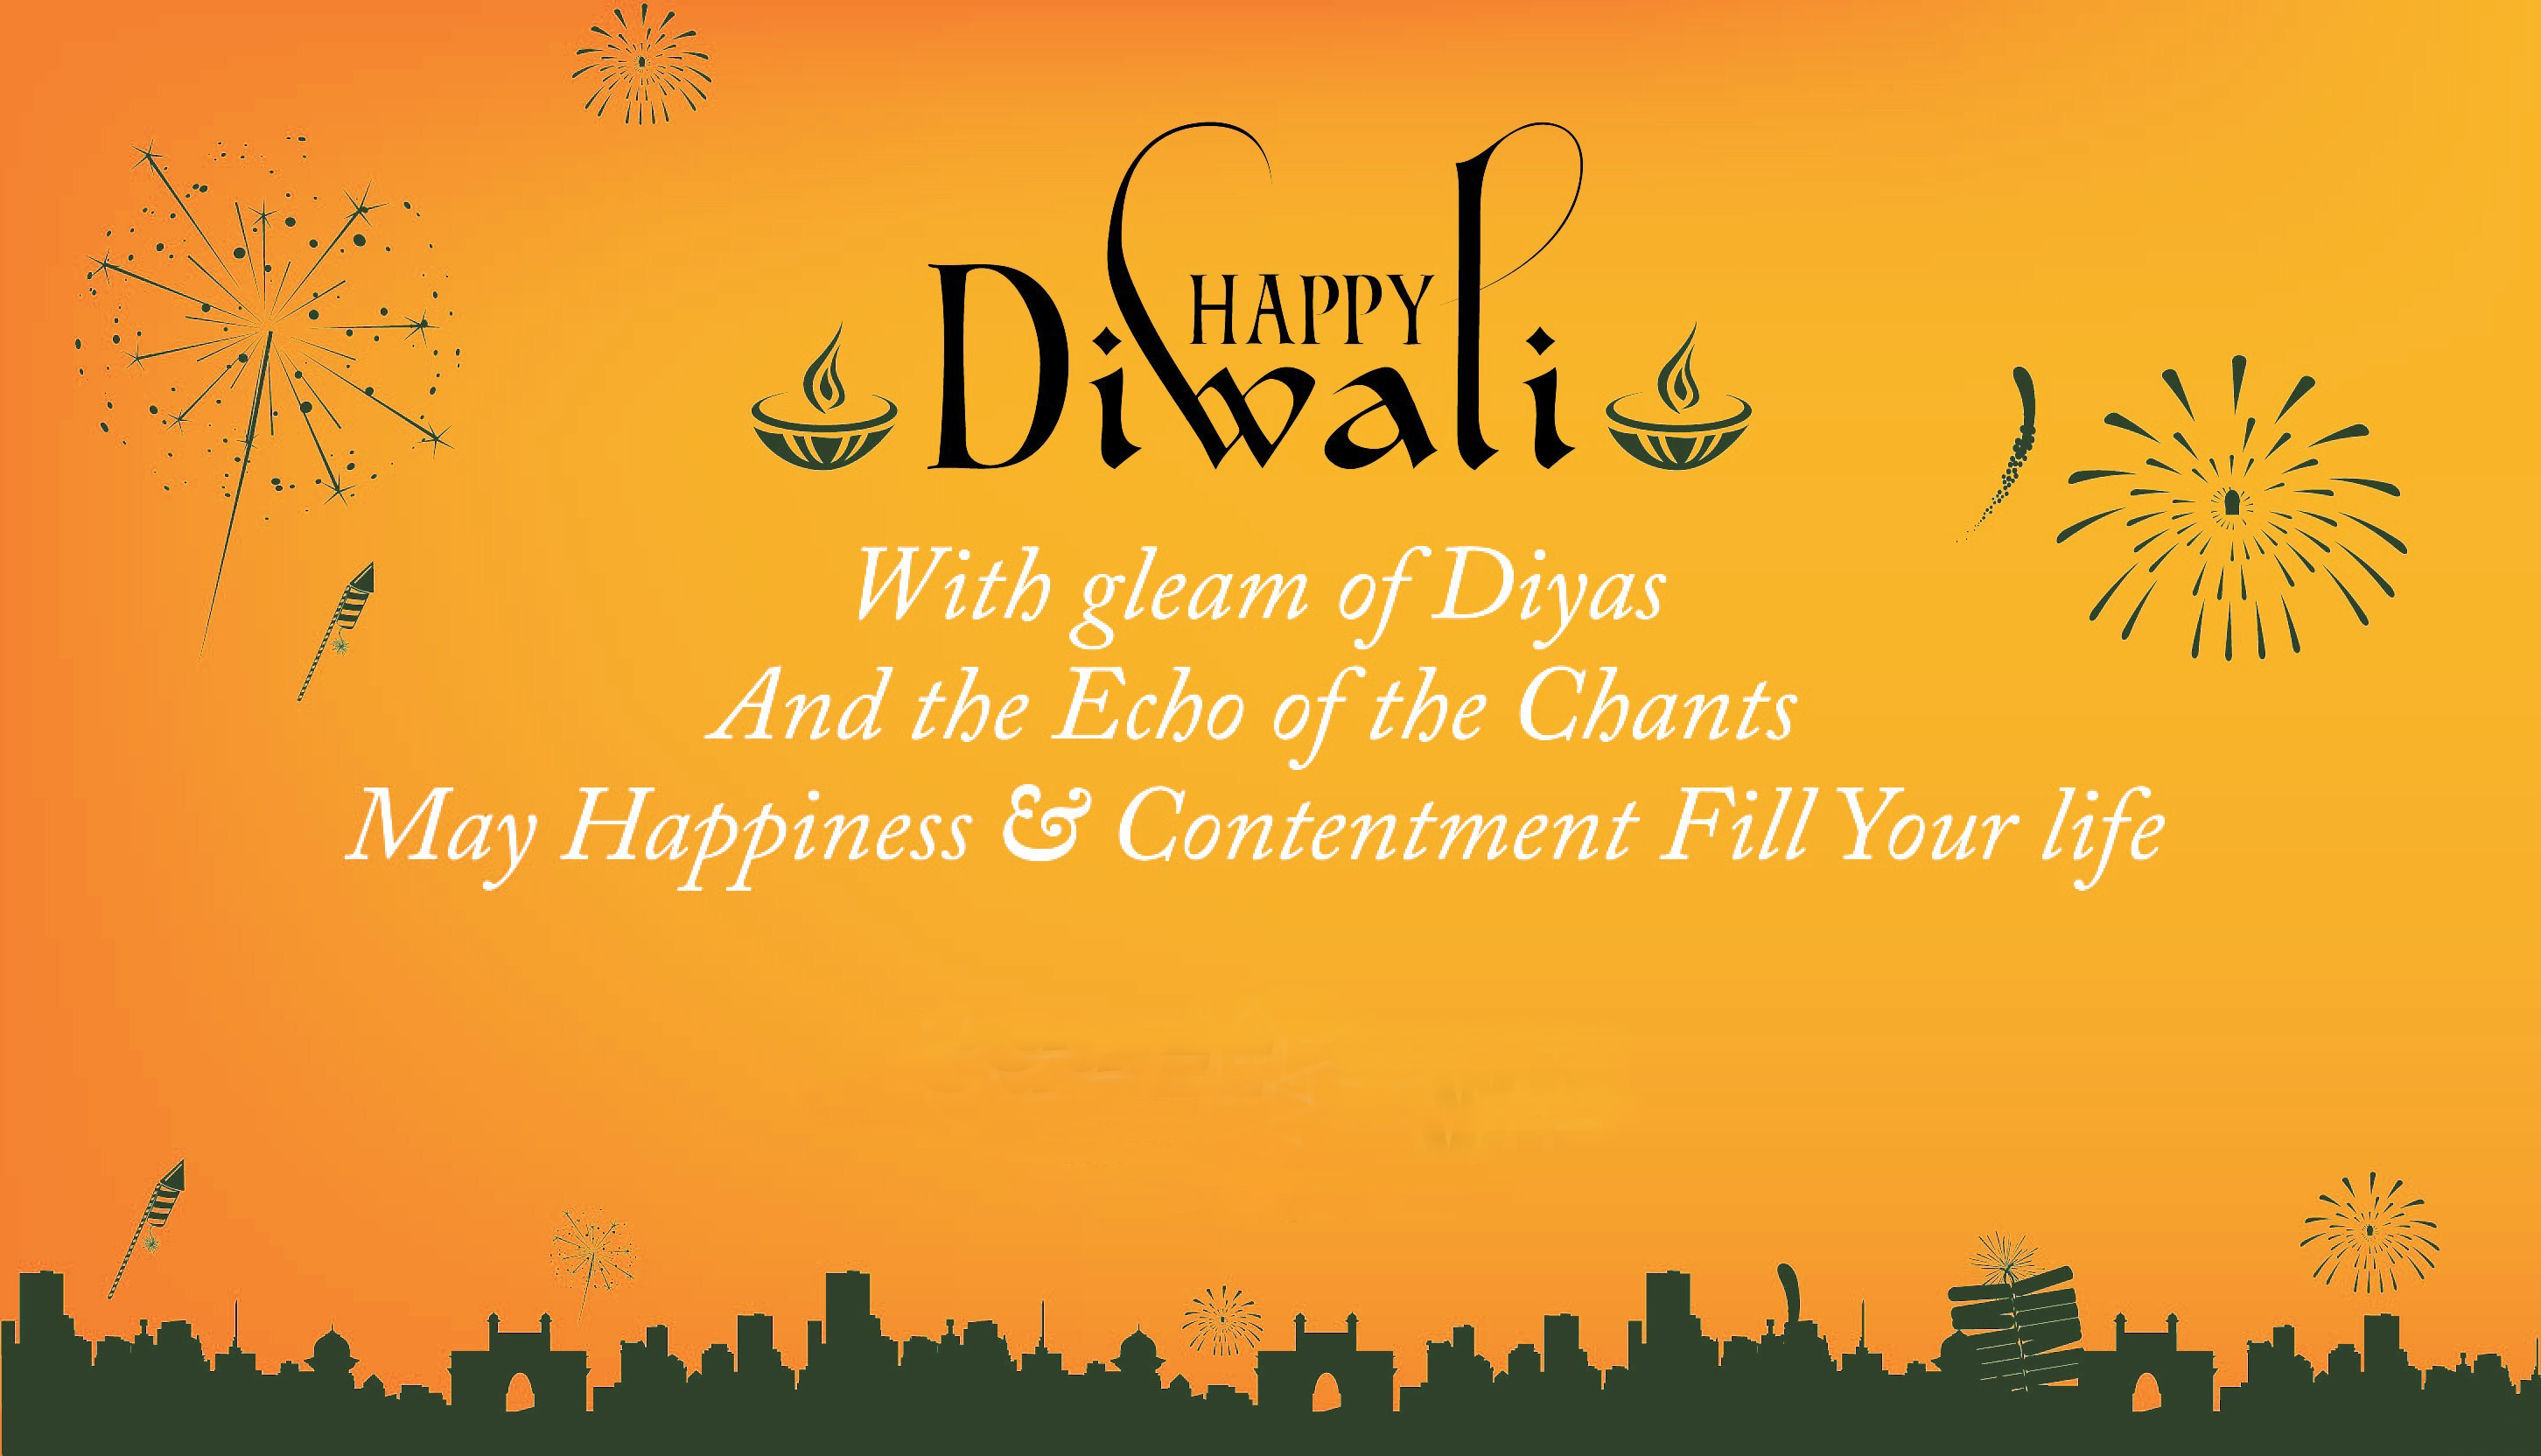 happy diwali in bangali wishes